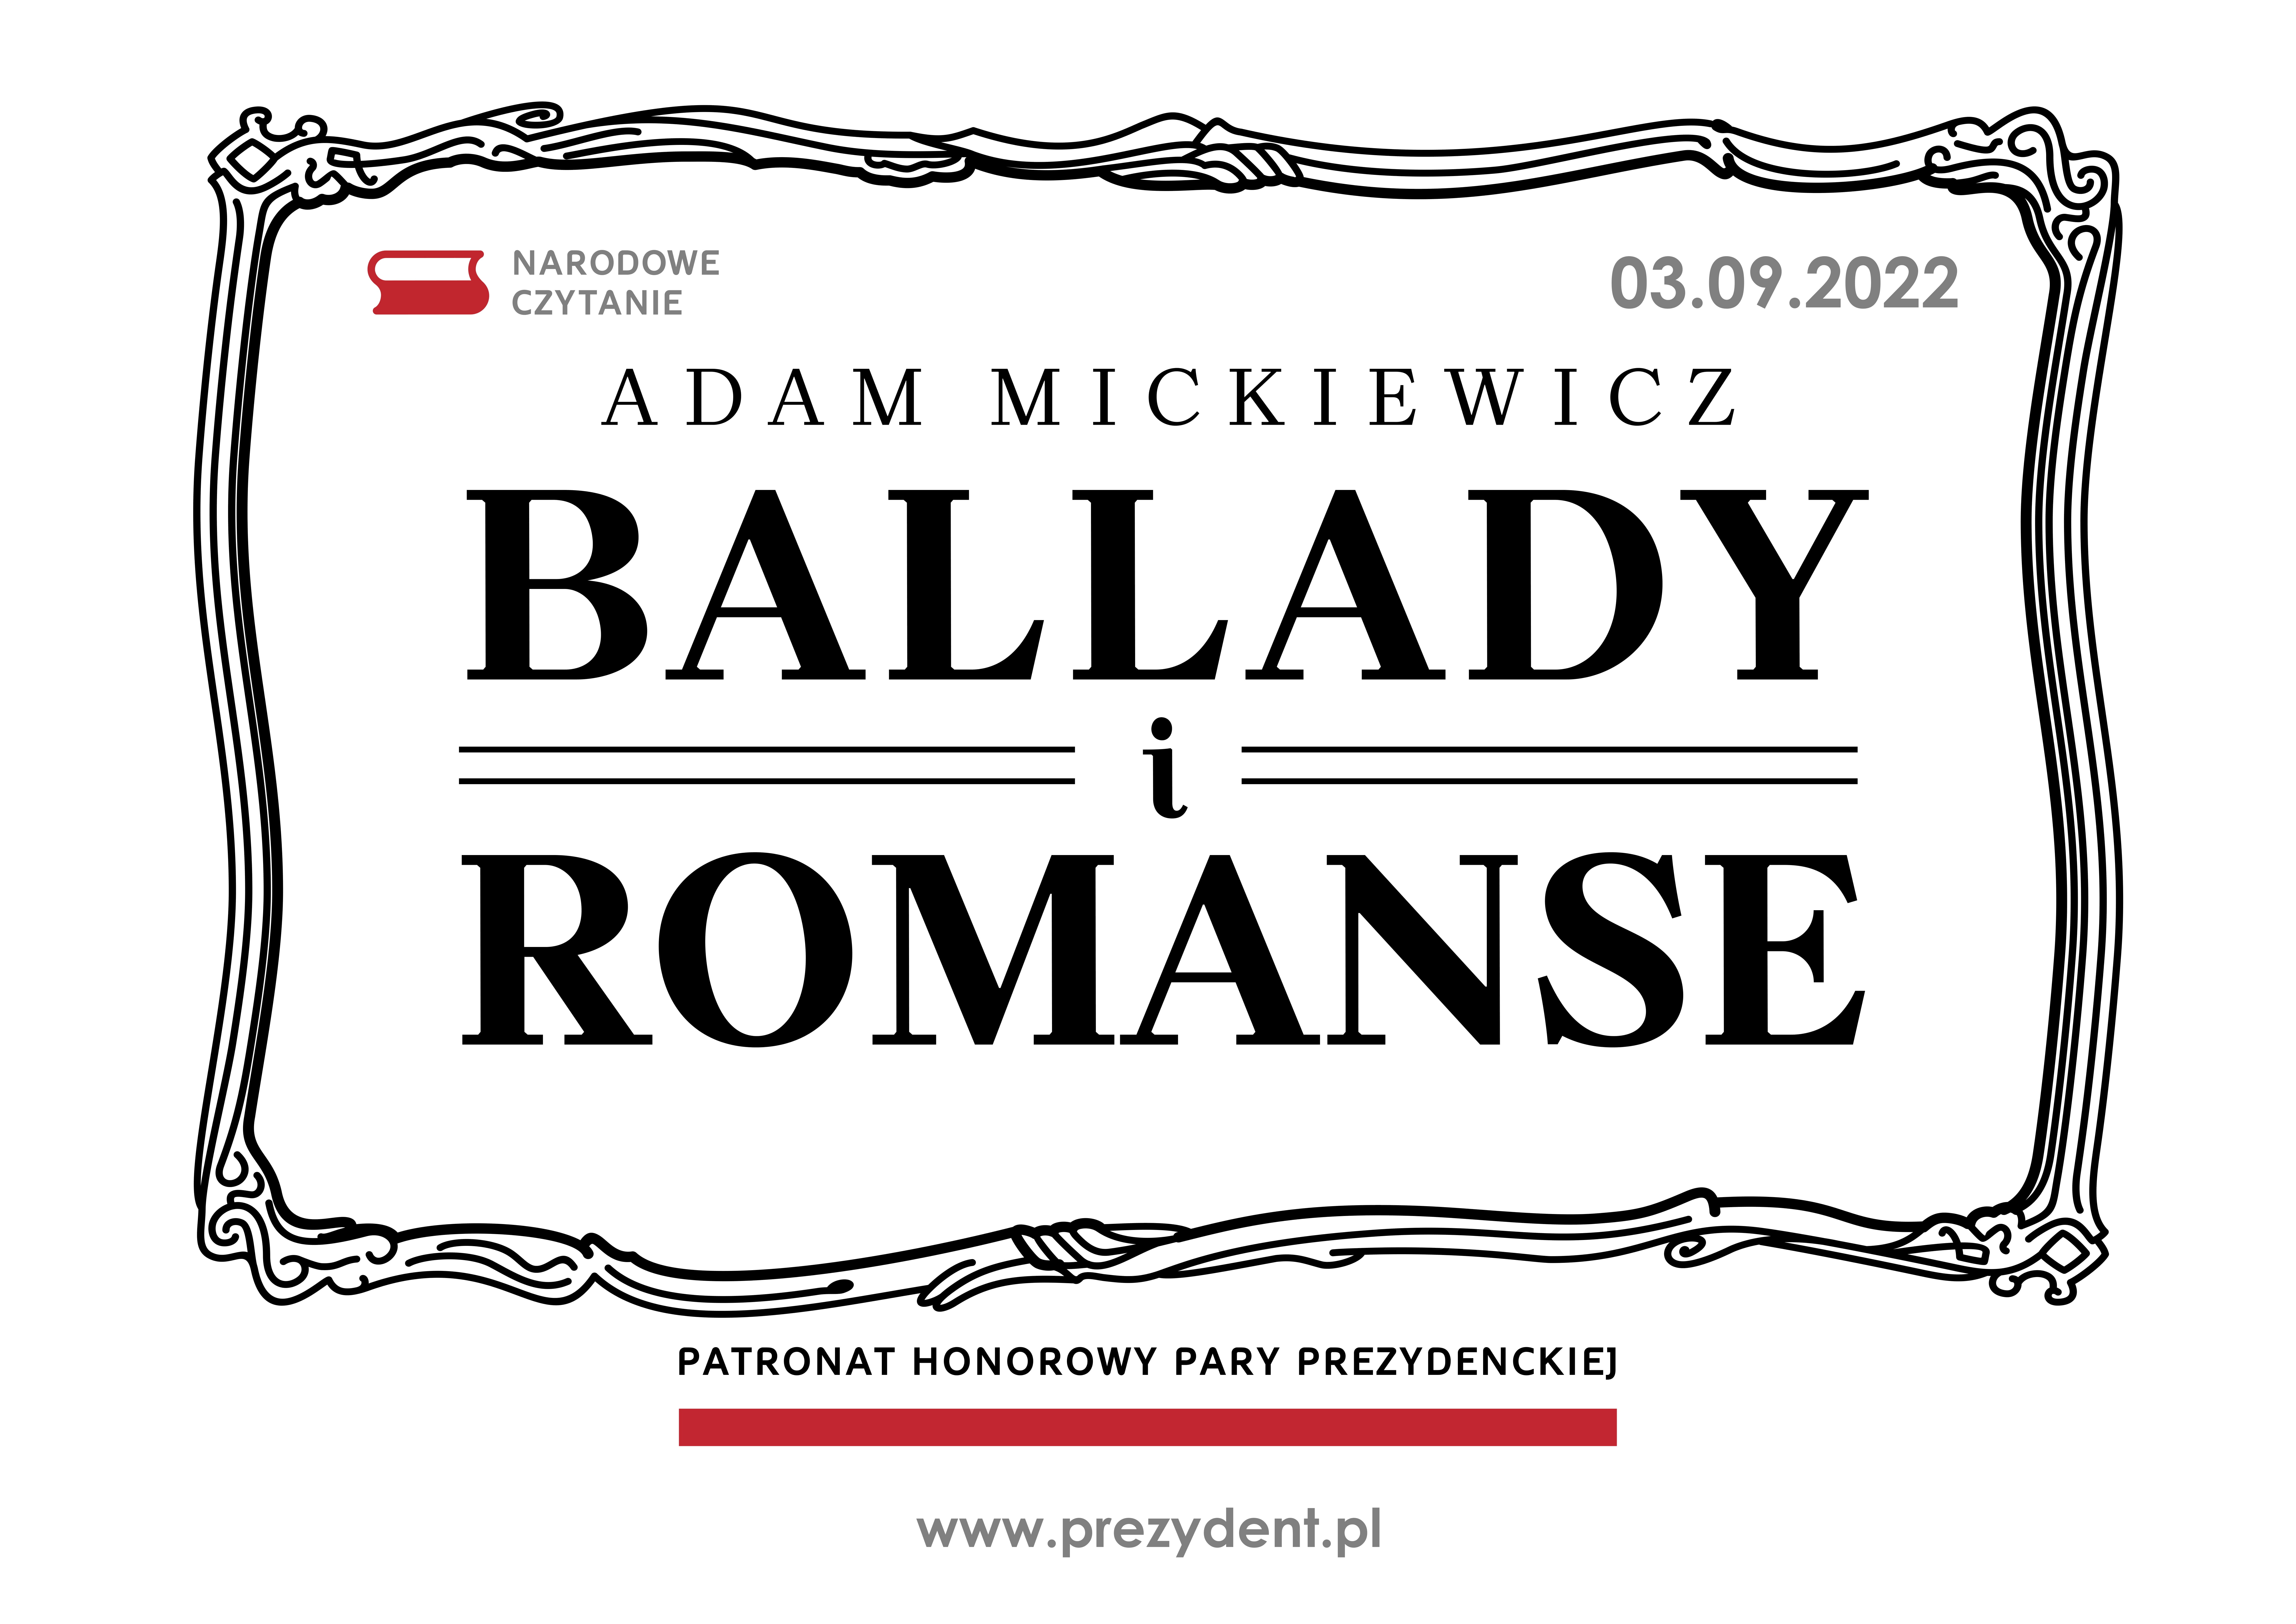 Nardowe Czytanie 3.09.2022. Adam Mickiewicz "Ballady i Romanse". Patronat honorowy pary prezydenckiej. www.prezydent.pl